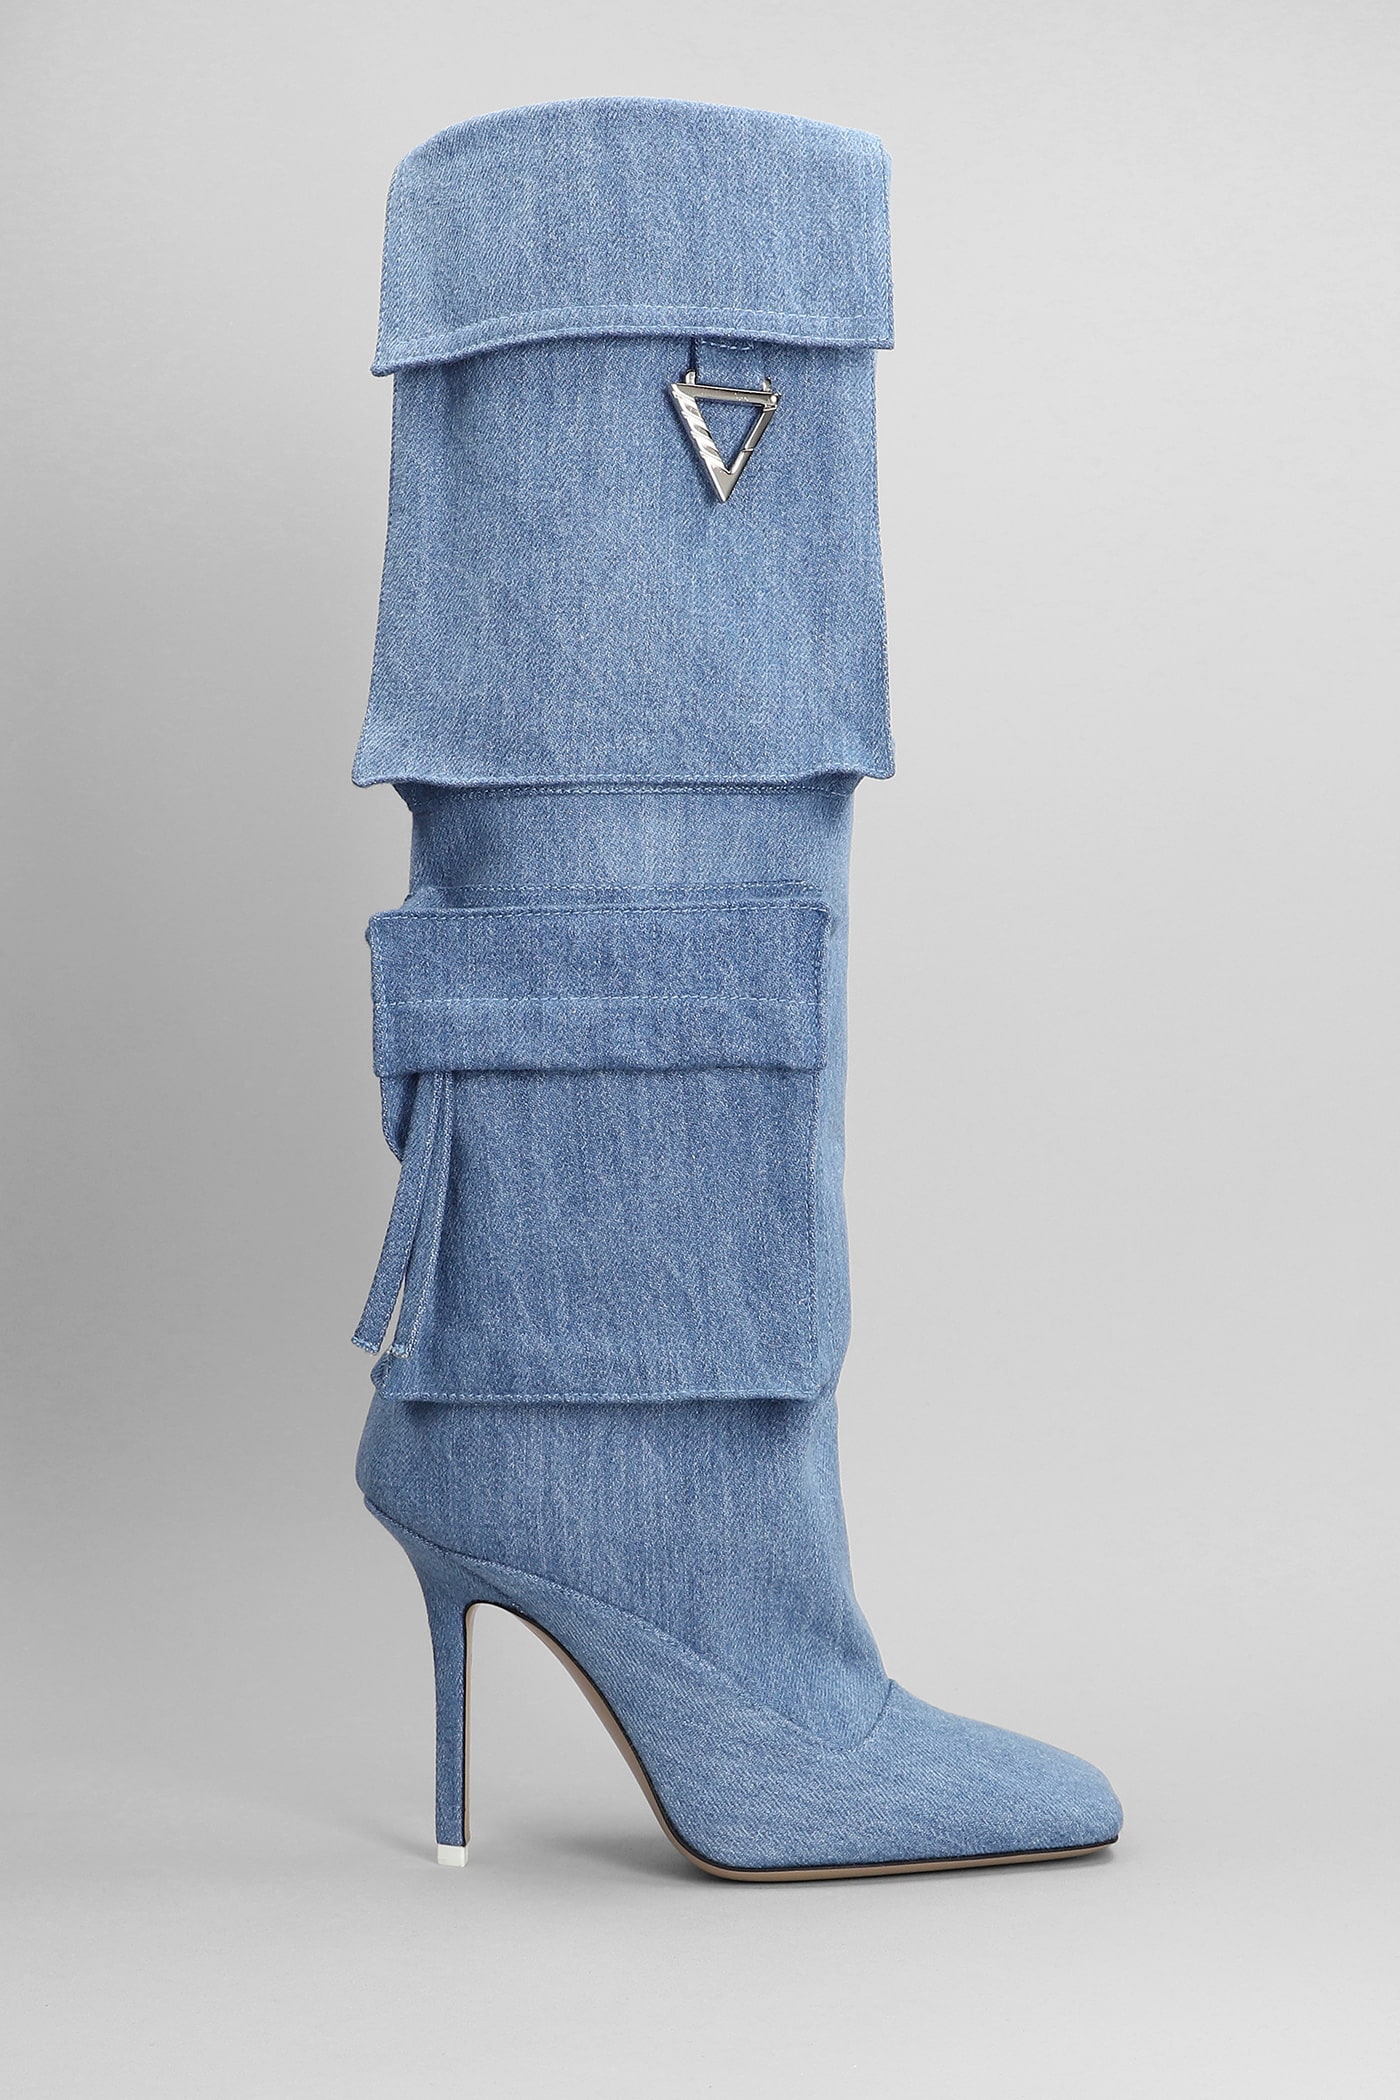 Sienna High Heels Boots In Cyan Cotton